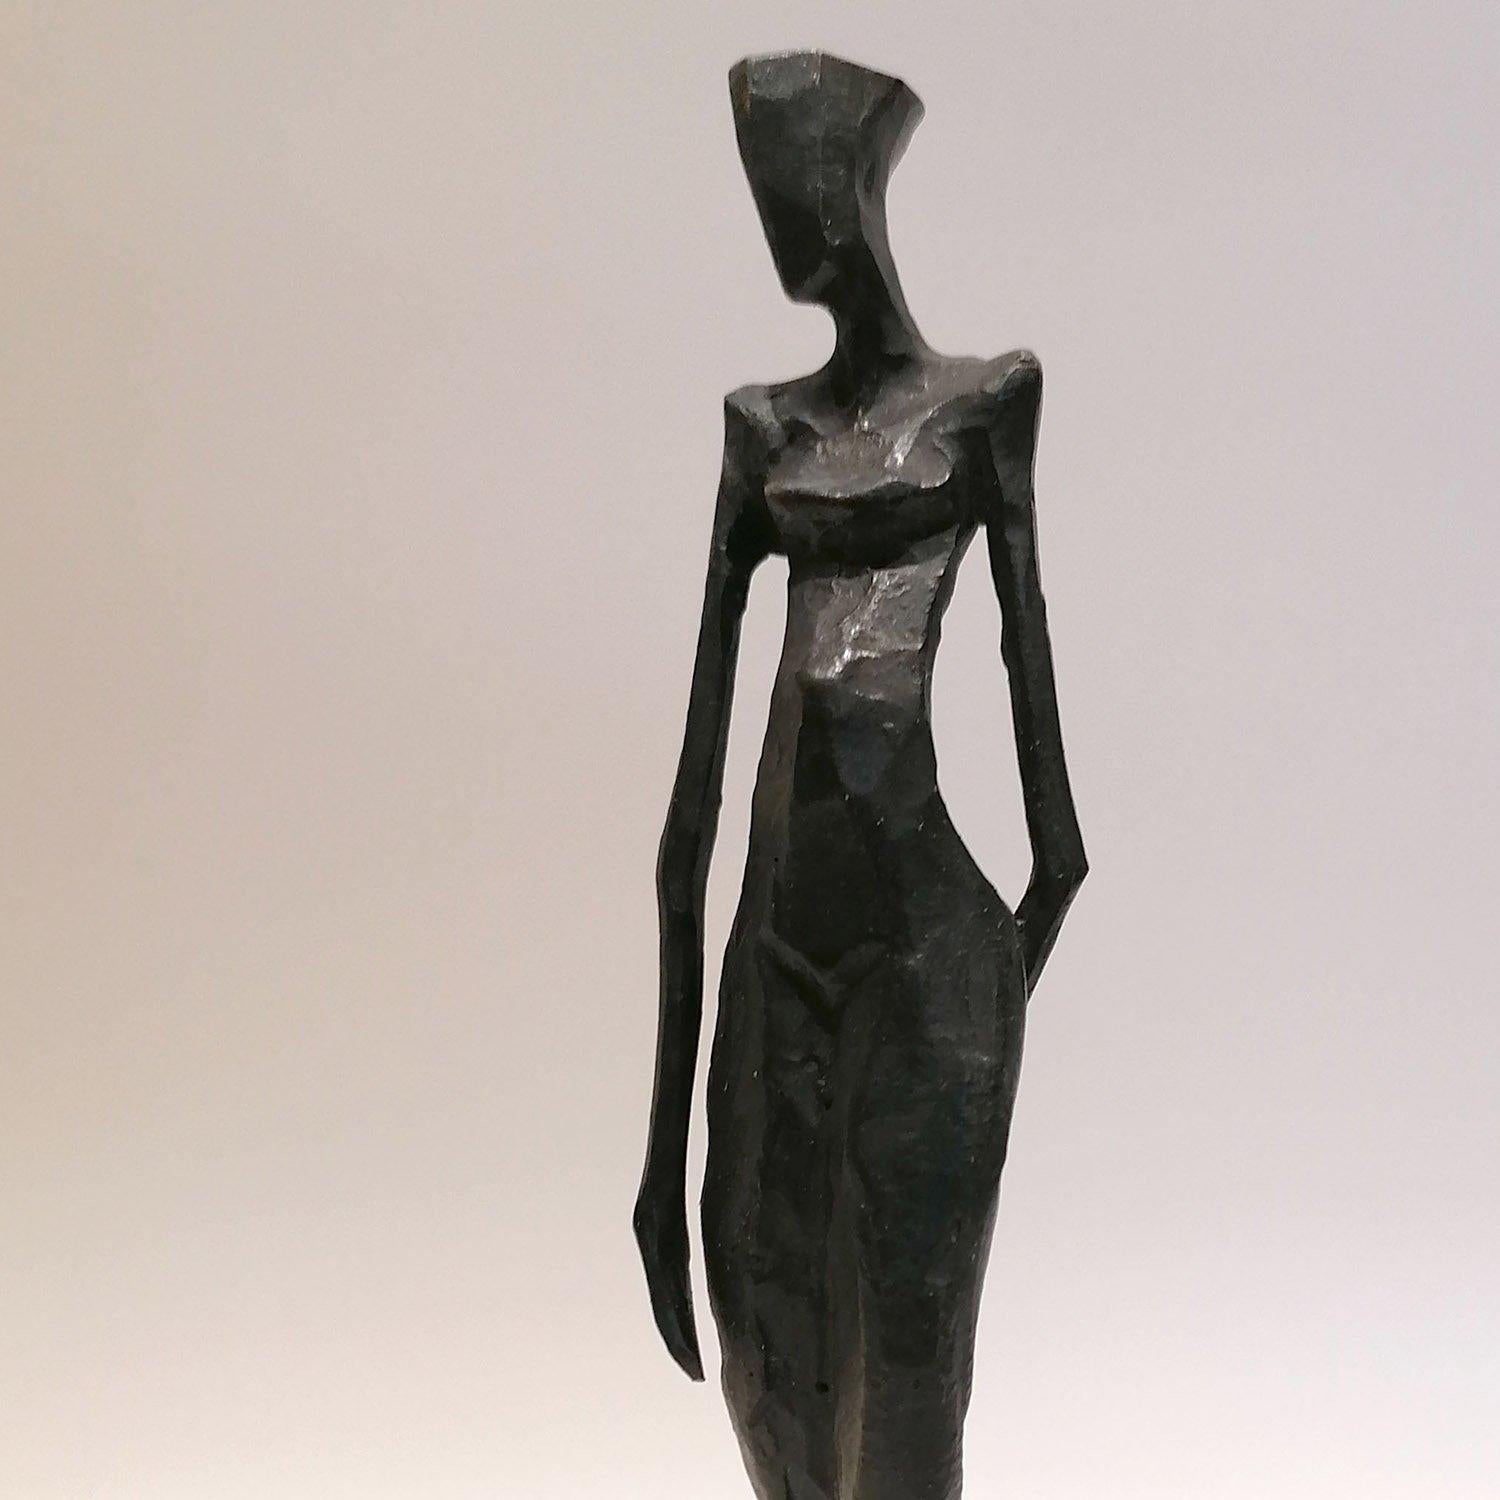 Reni  von Nando Kallweit.  Eine elegante figurative Bronzeskulptur der weiblichen Form. 

Auflage von 25 Stück
Abmessungen: 21cm hoch